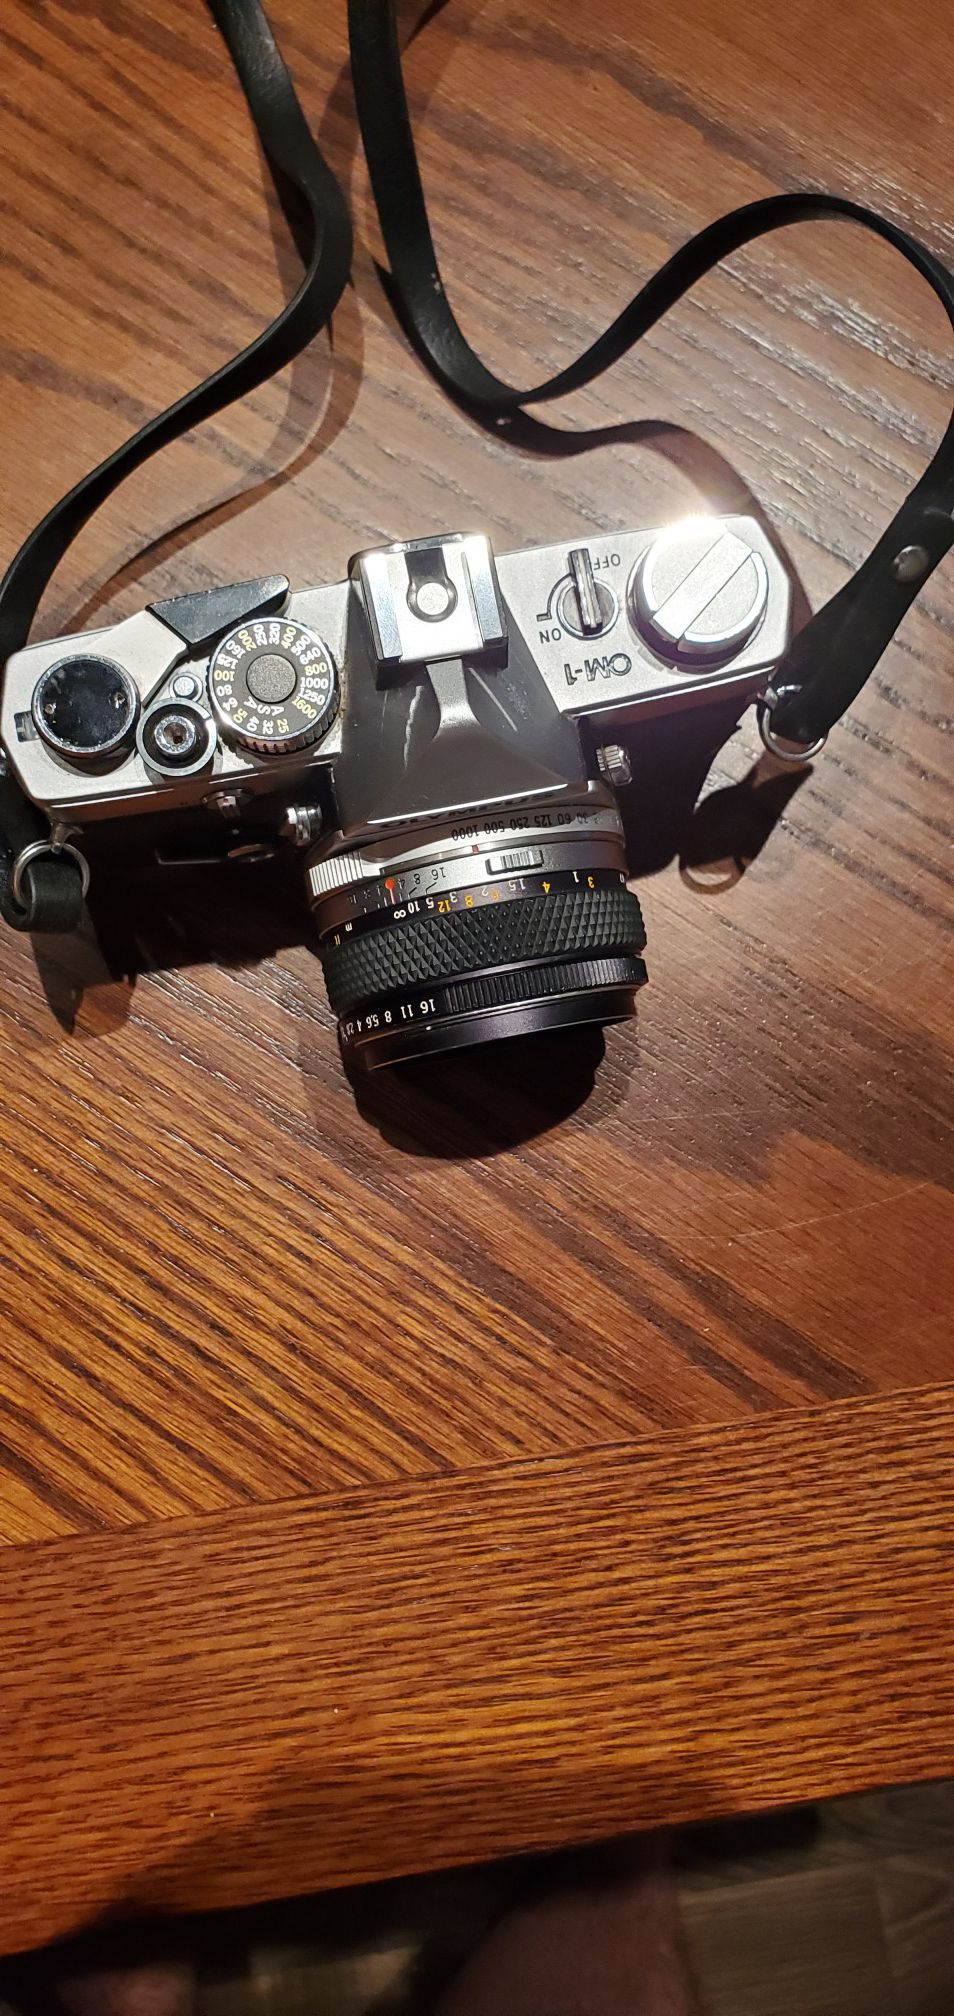 Olympus camera and Nikon lense